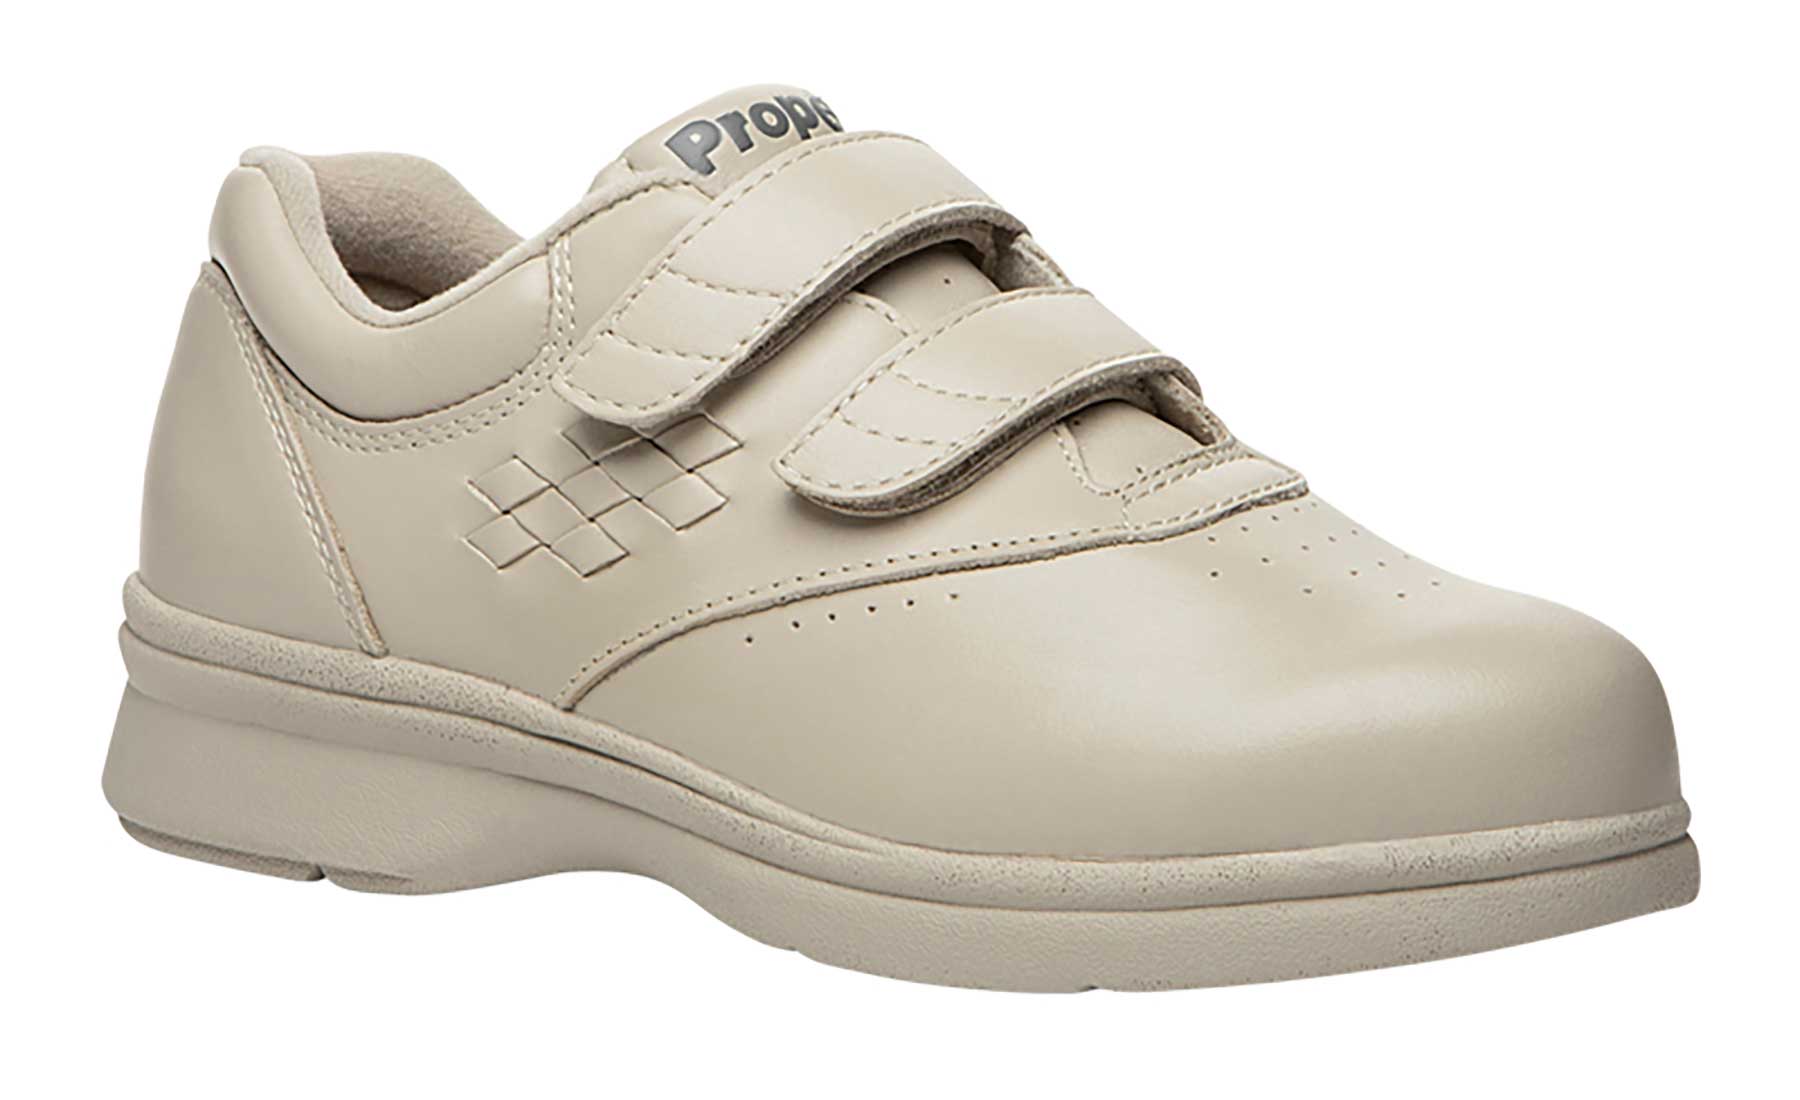 Propet Vista Walker Strap W3915 Women's Athletic Shoe | eBay